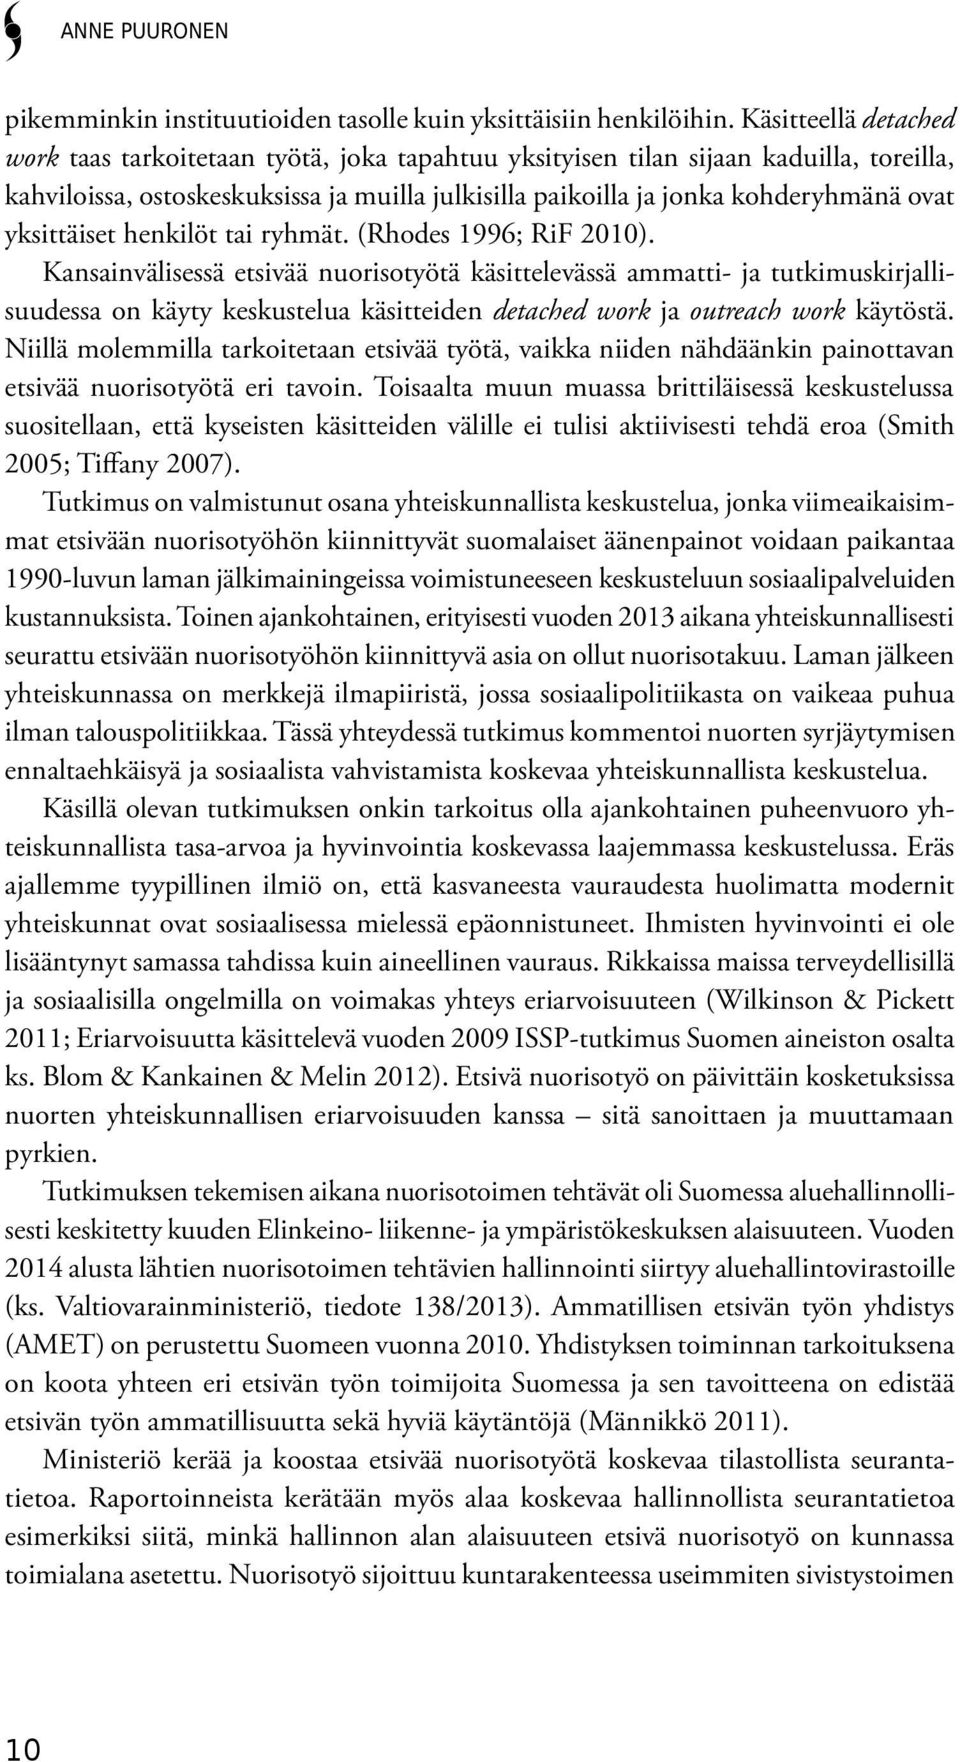 yksittäiset henkilöt tai ryhmät. (Rhodes 1996; RiF 2010).